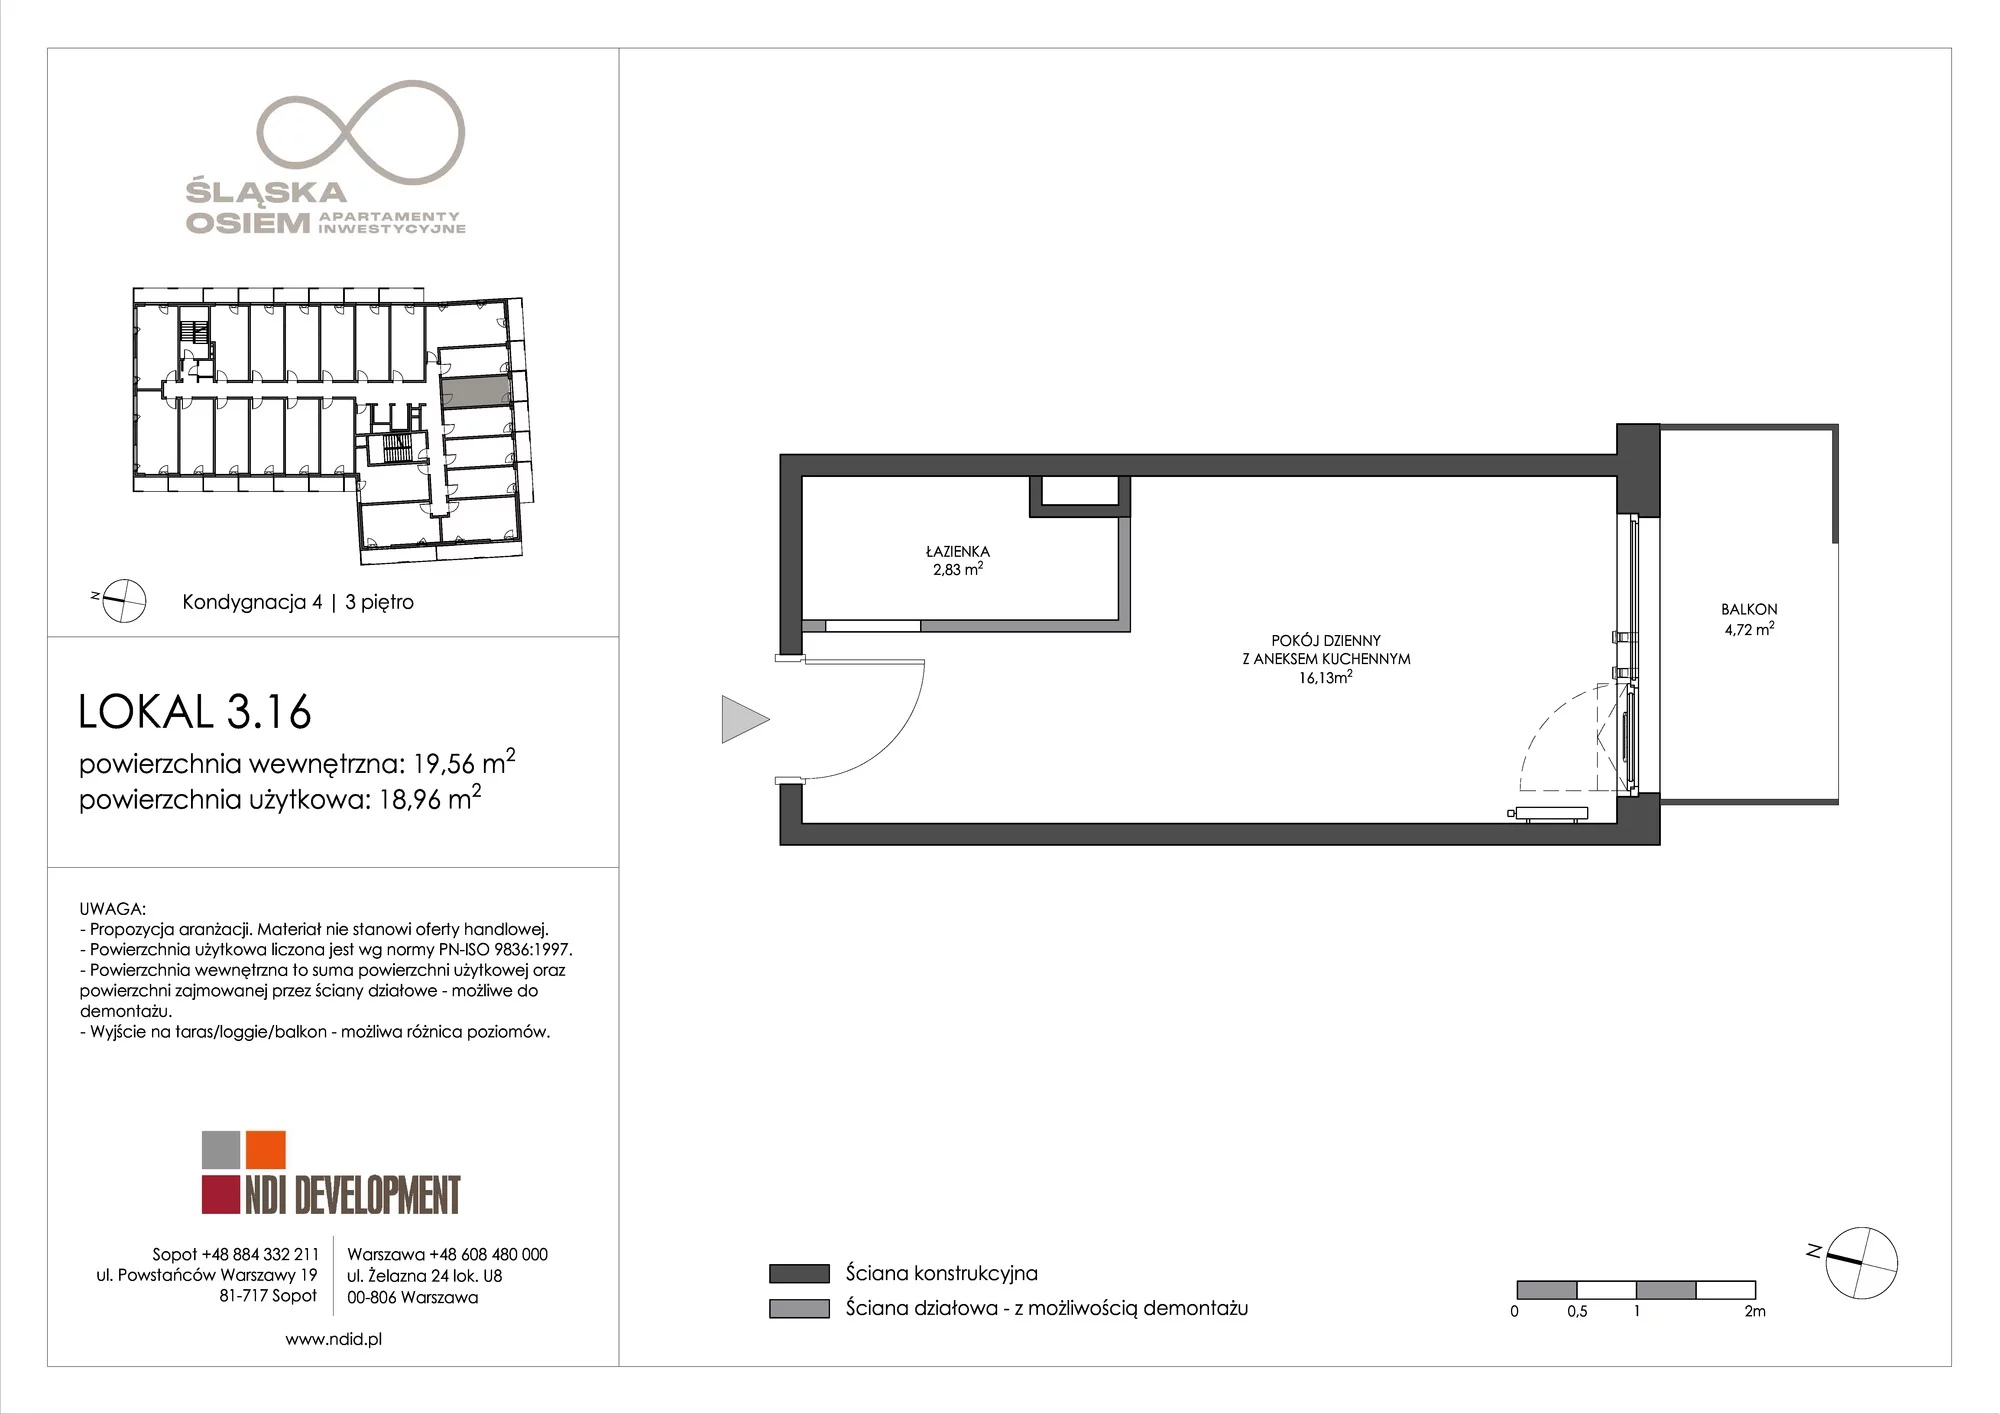 Apartament inwestycyjny 19,56 m², piętro 3, oferta nr 3.16, Śląska Osiem, Gdańsk, Przymorze, ul. Śląska 8